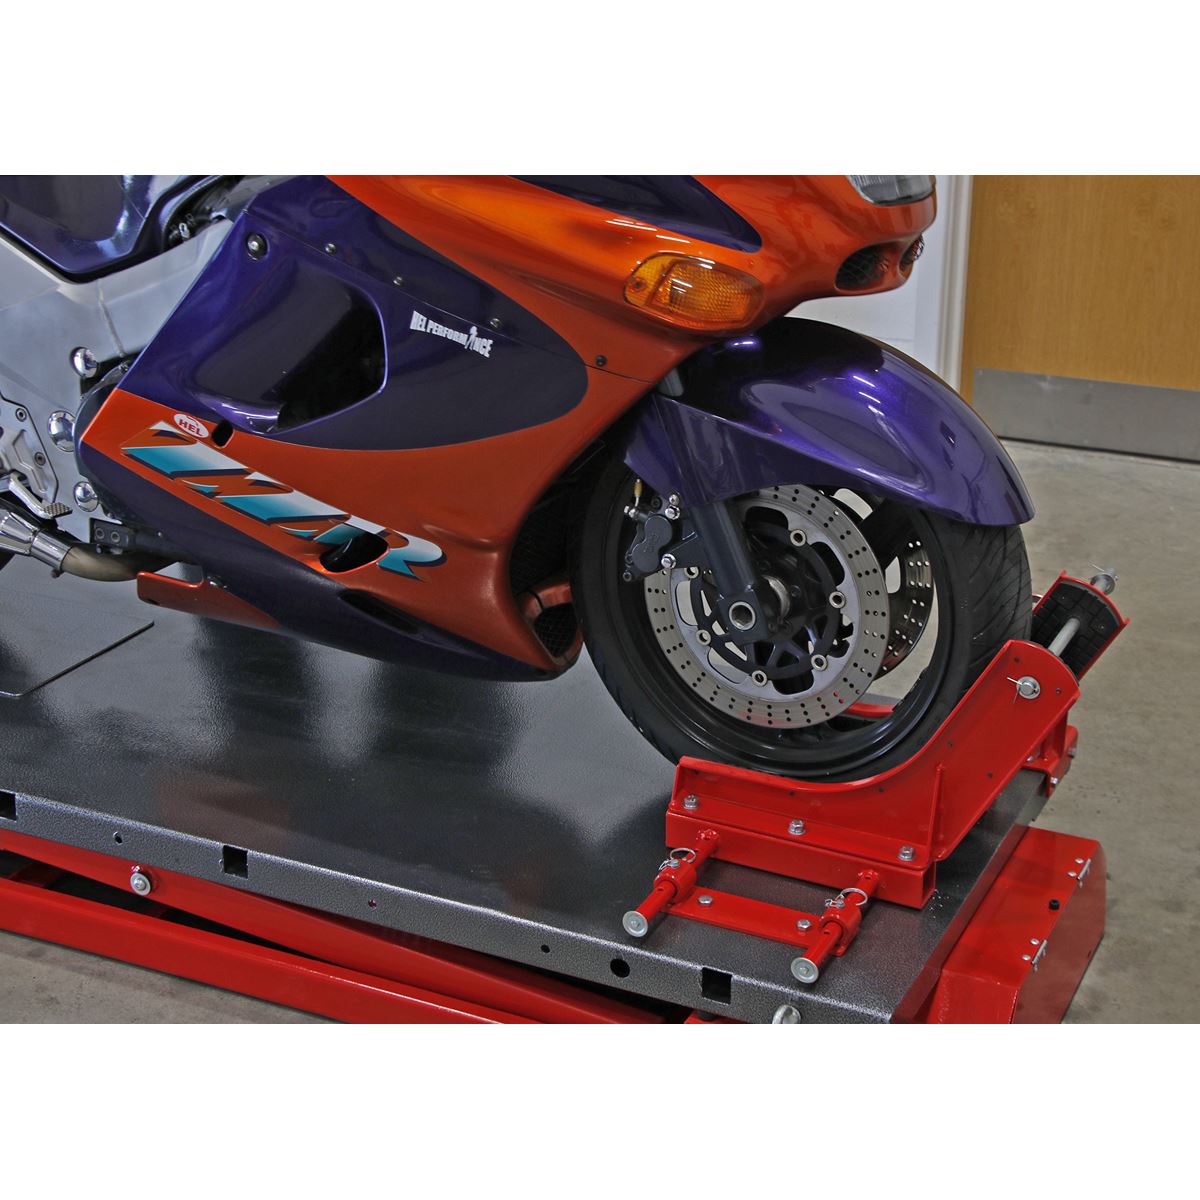 Sealey Motorcycle Lift 680kg Capacity Heavy-Duty Electro/Hydraulic